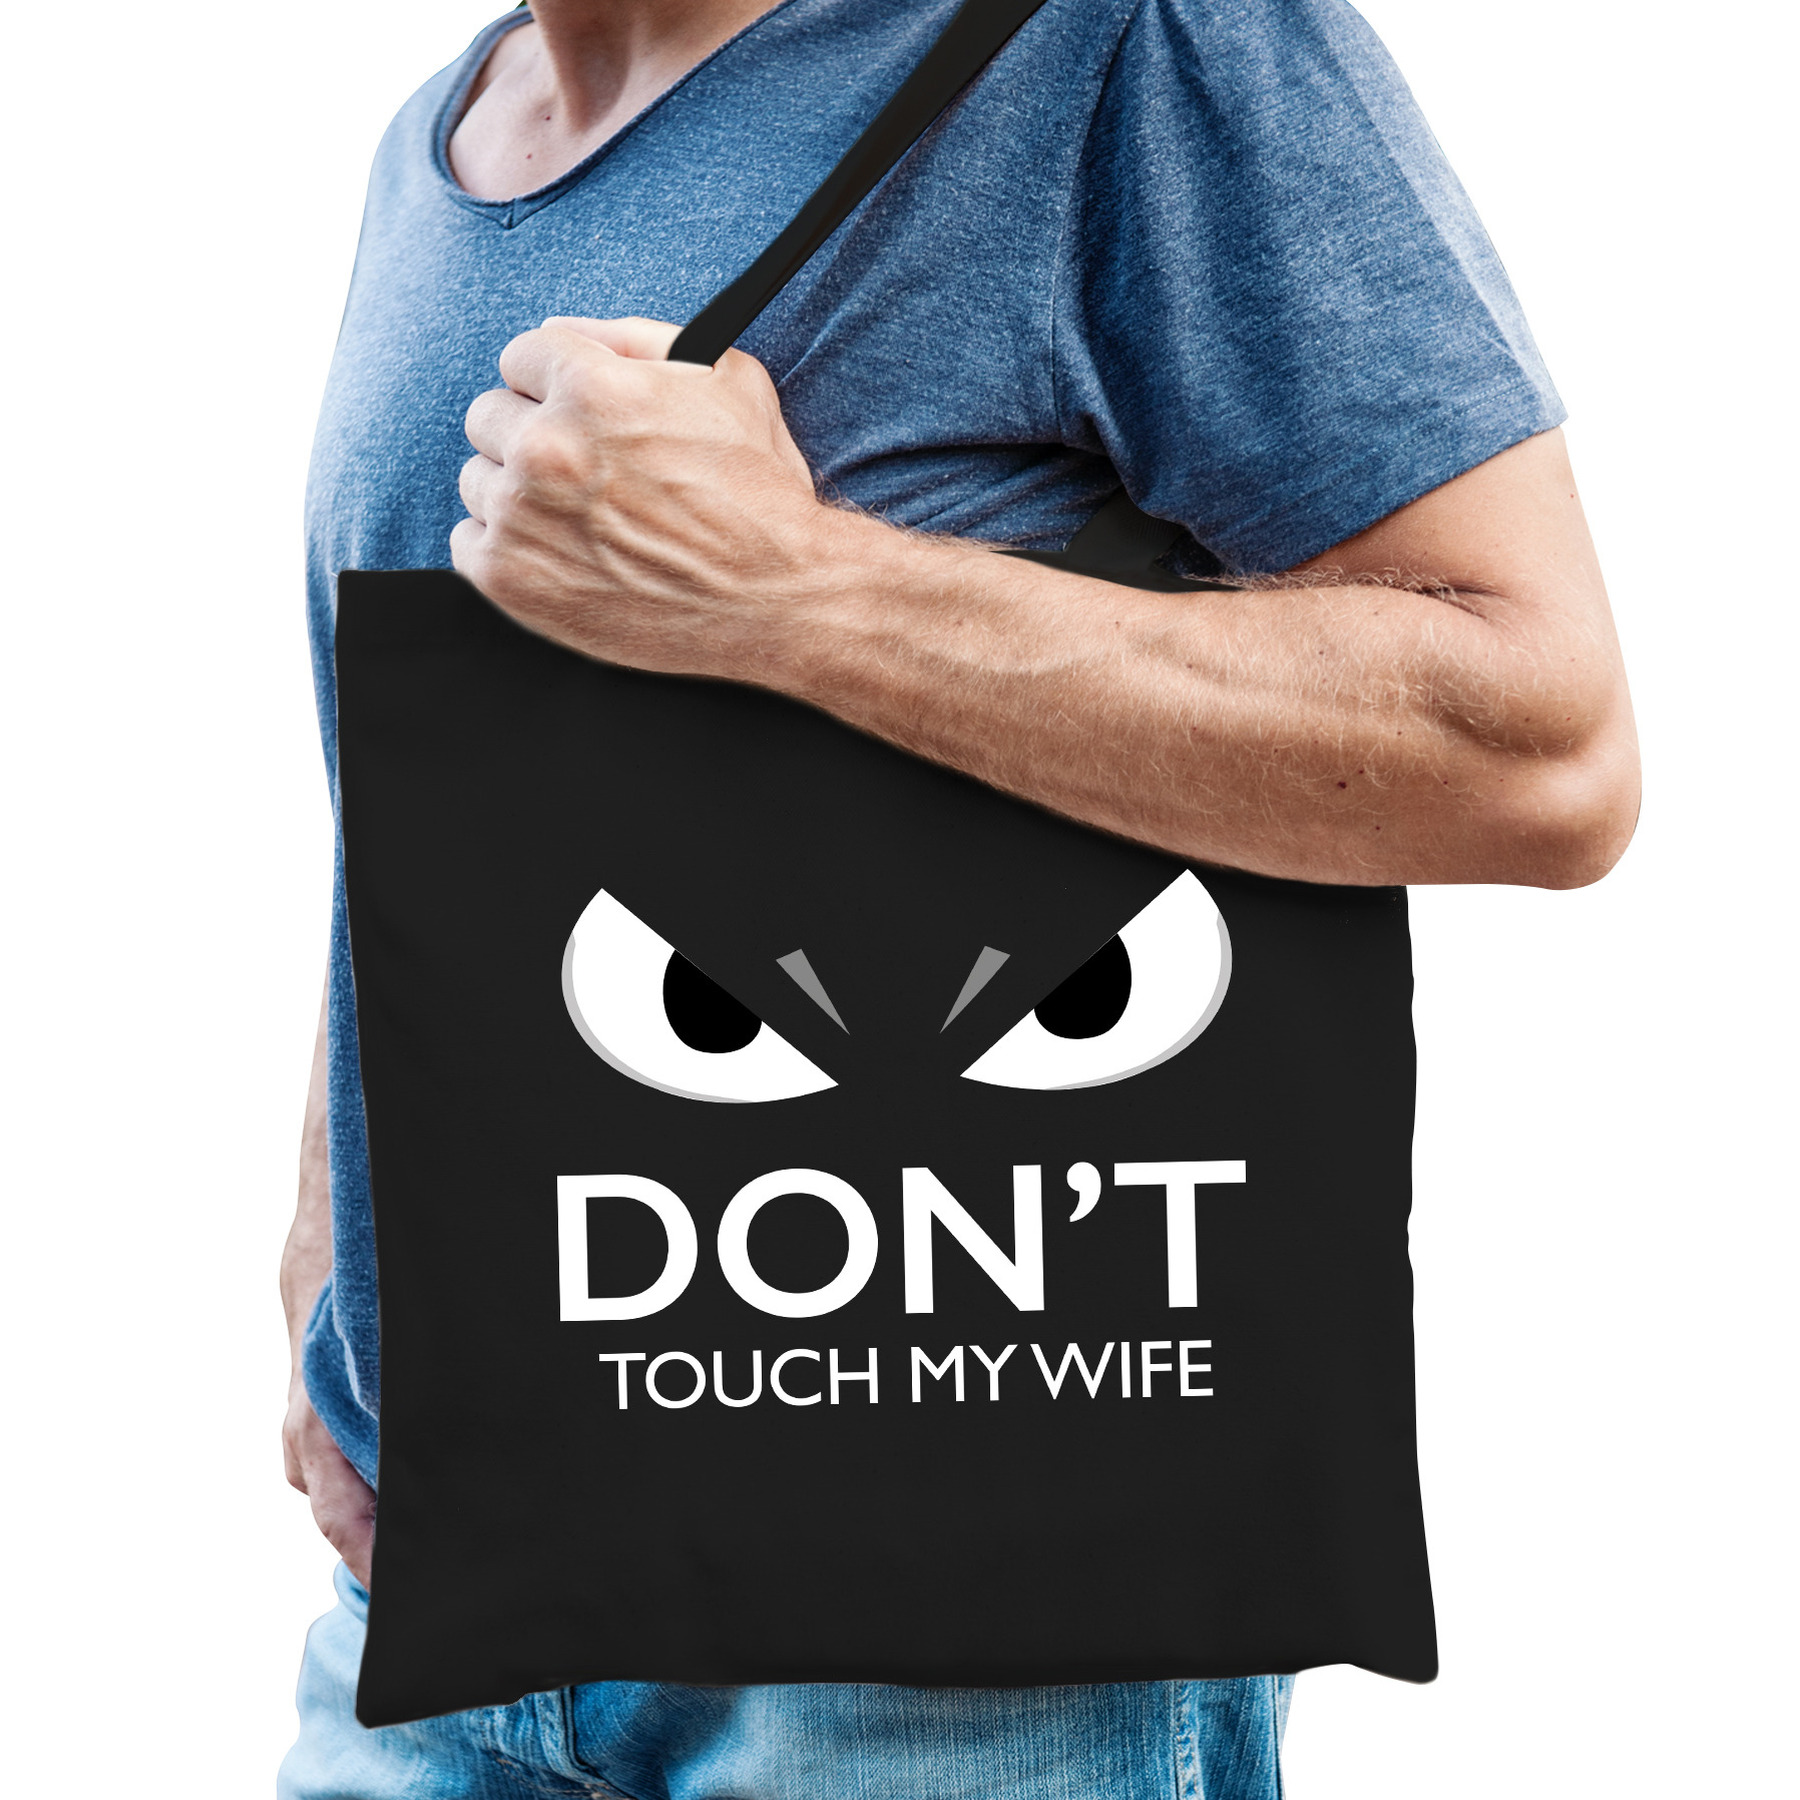 Dont touch wife cadeau katoenen tas zwart voor volwassenen